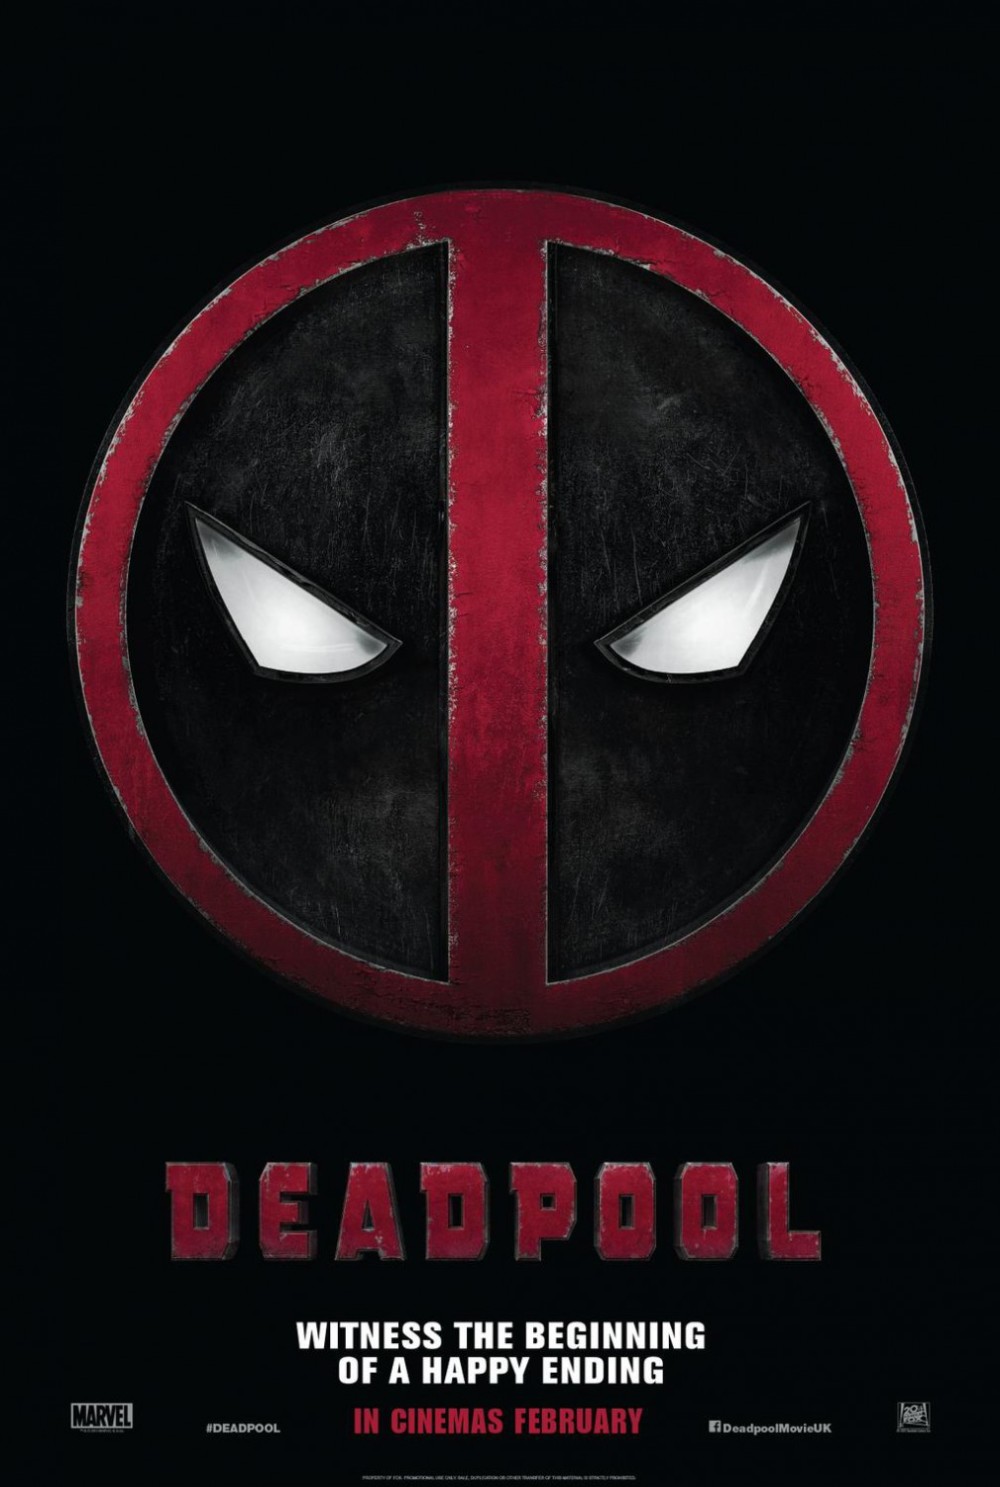 Brute eerste trailer 'Deadpool'!!